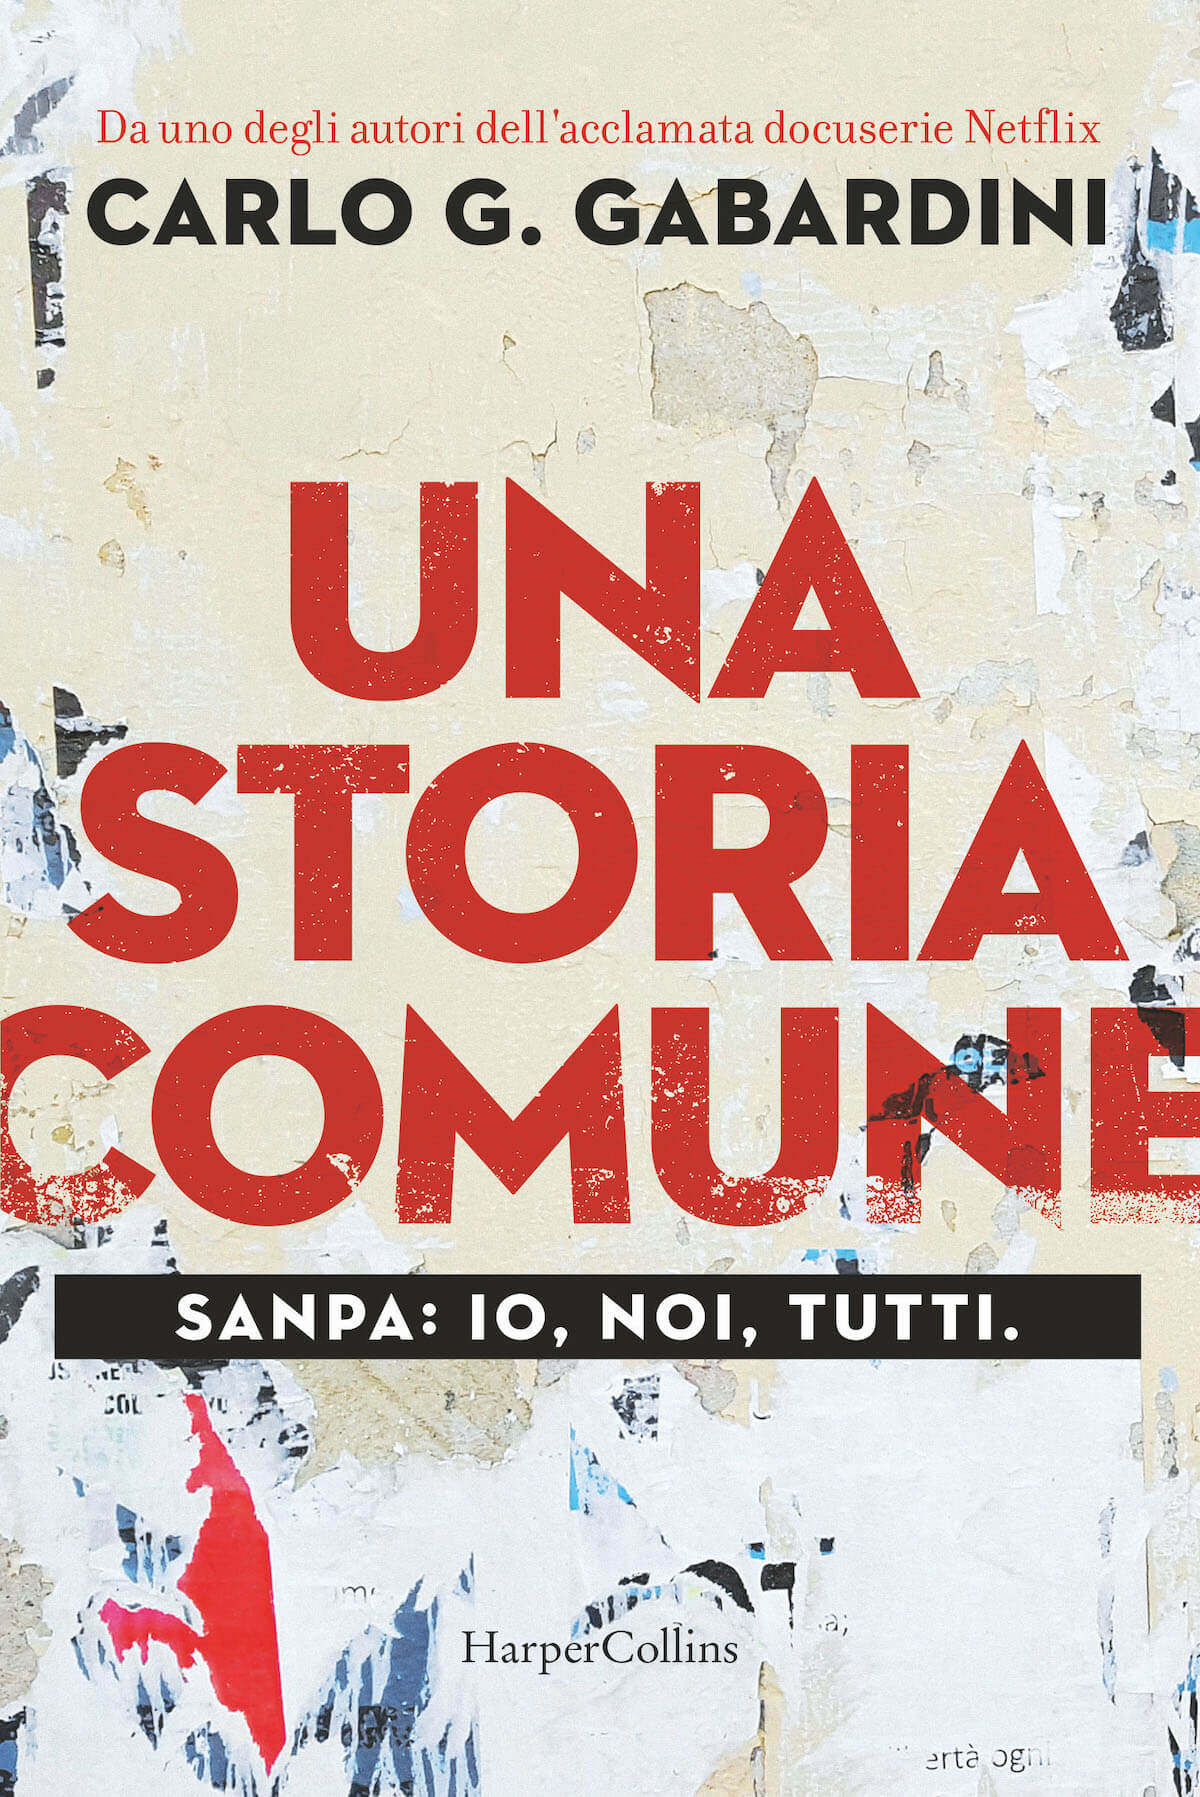 Sanpa: Una Storia Comune, intervista a Carlo Gabardini: "Sogno una docuserie sulla storia LGBTQ+ italiana" - Sanpa di Carlo Gabardini cover - Gay.it